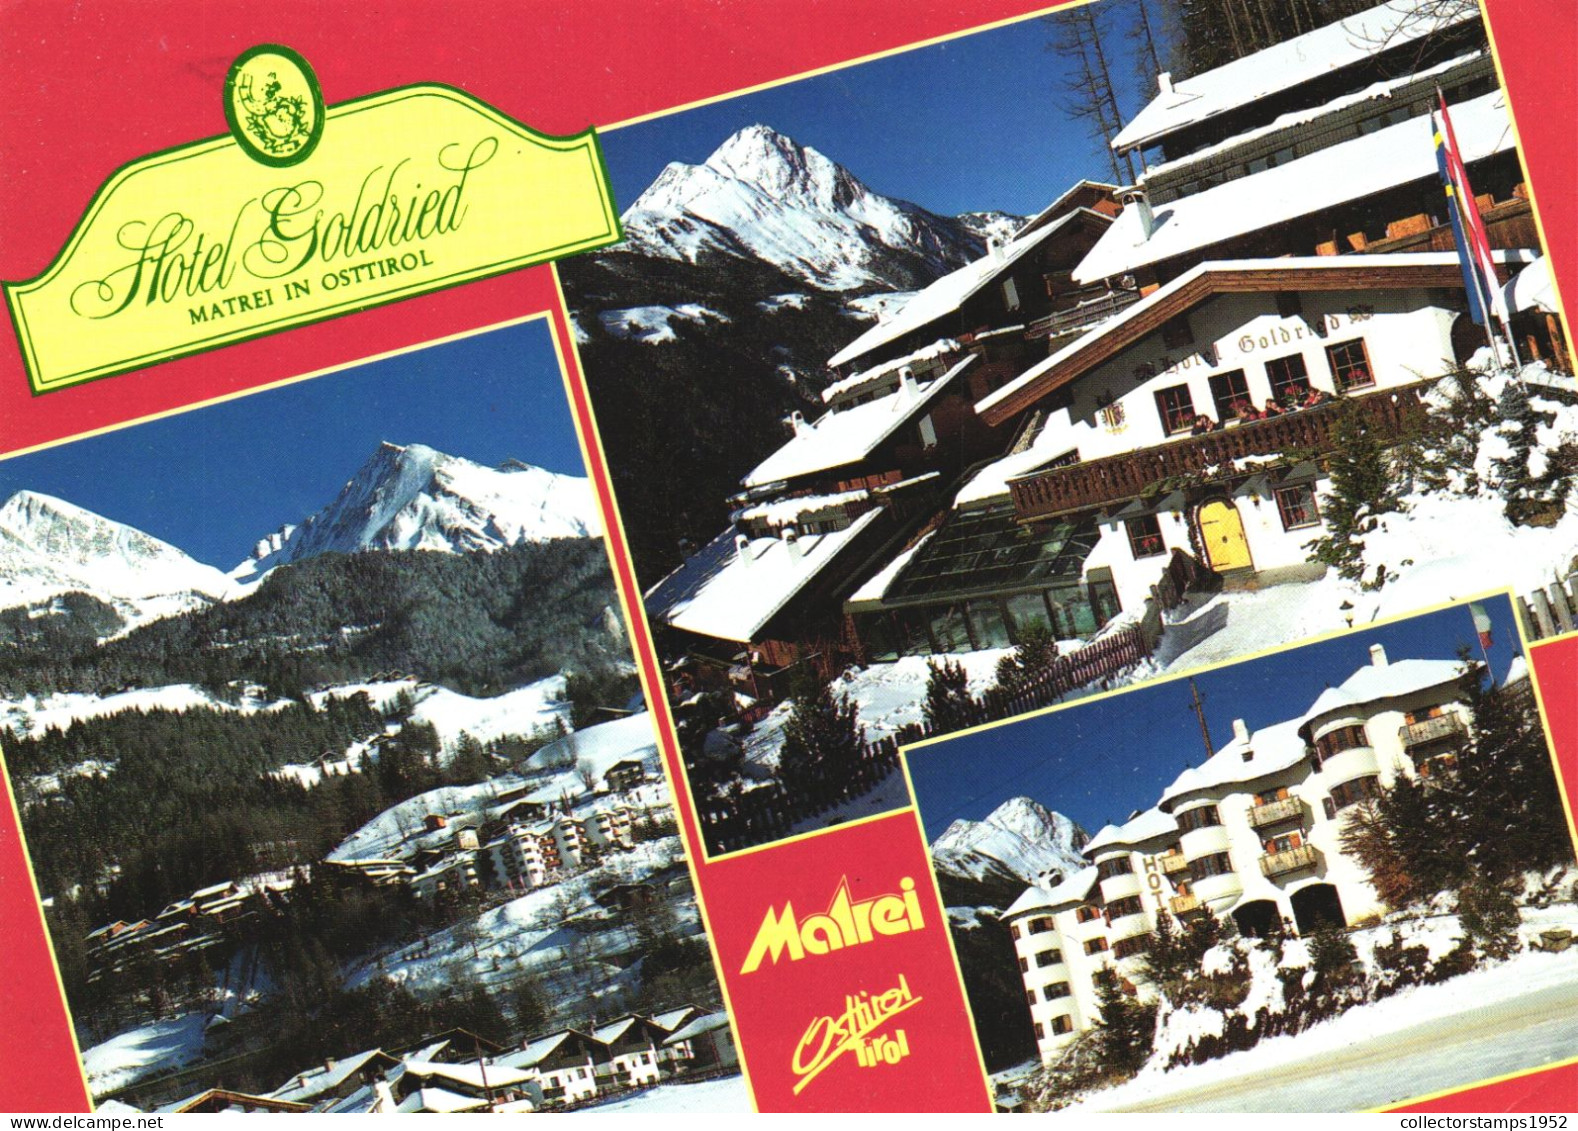 AUSTRIA, TIROL, MATREI IN OSTTIROL, MOUNTAIN, SNOW, WINTER, HOTEL GOLDRIED - Matrei In Osttirol